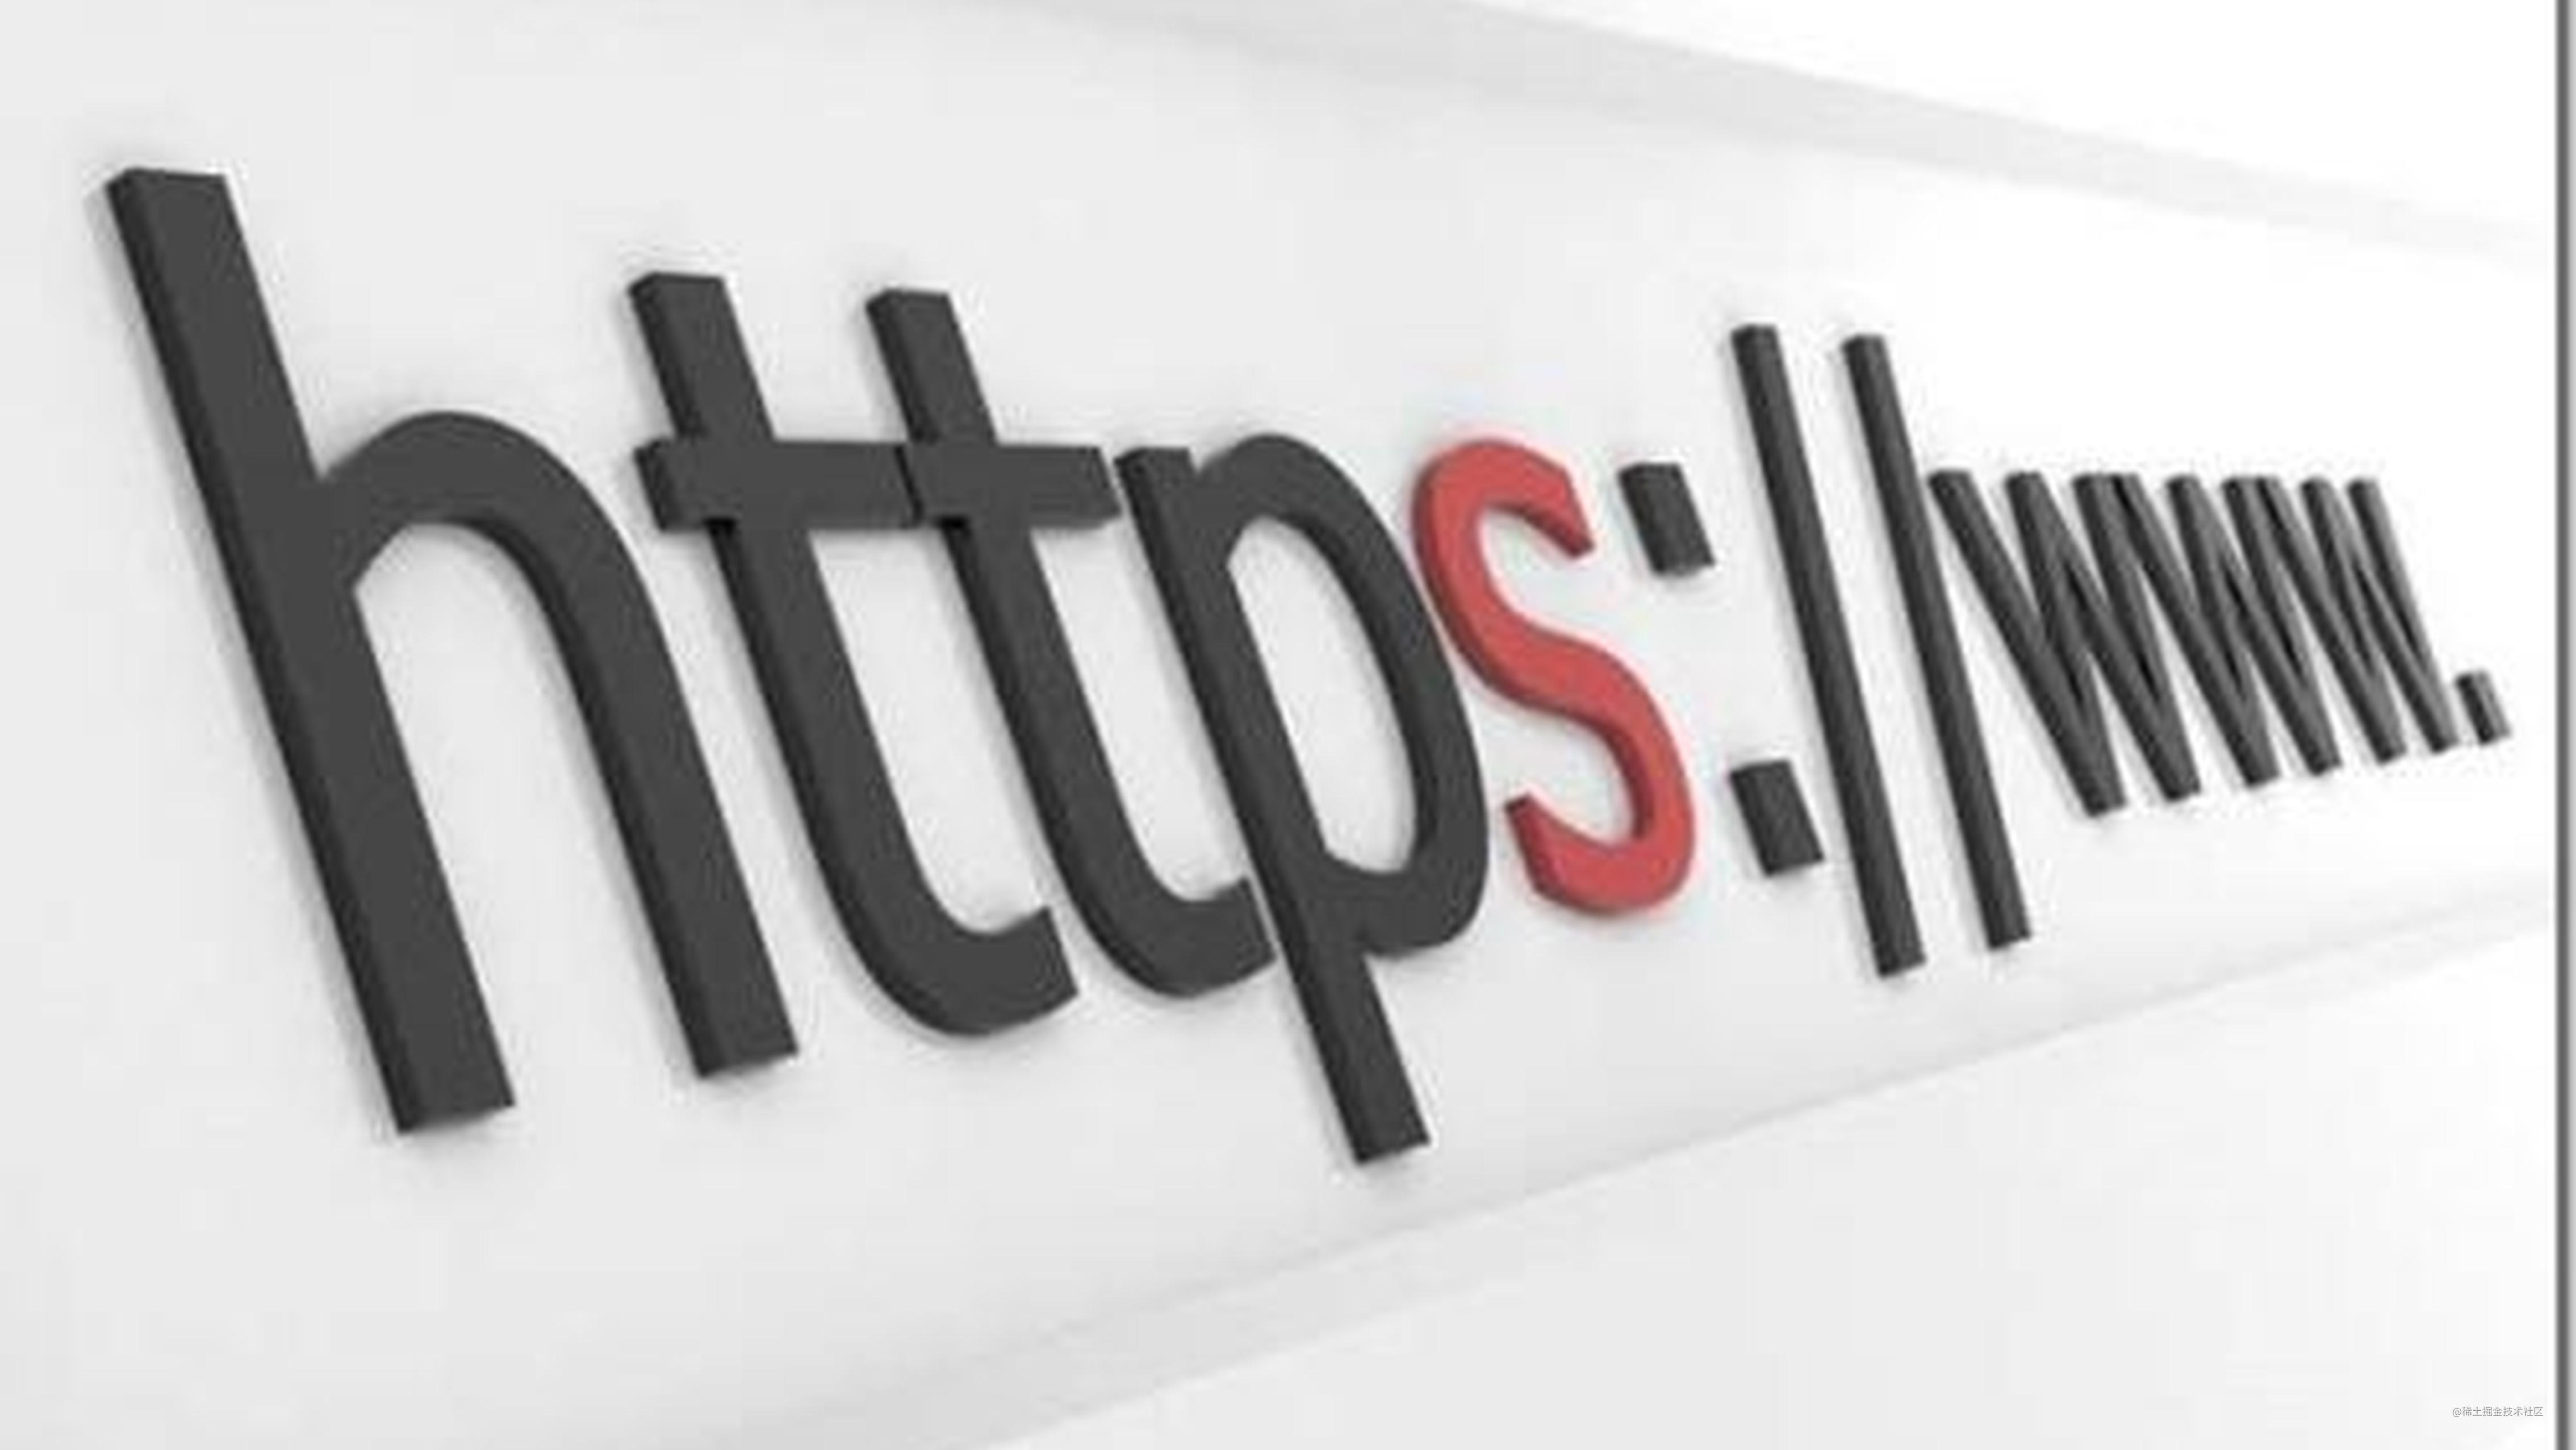 Https、SSL/TLS相关知识及wireShark抓包分析